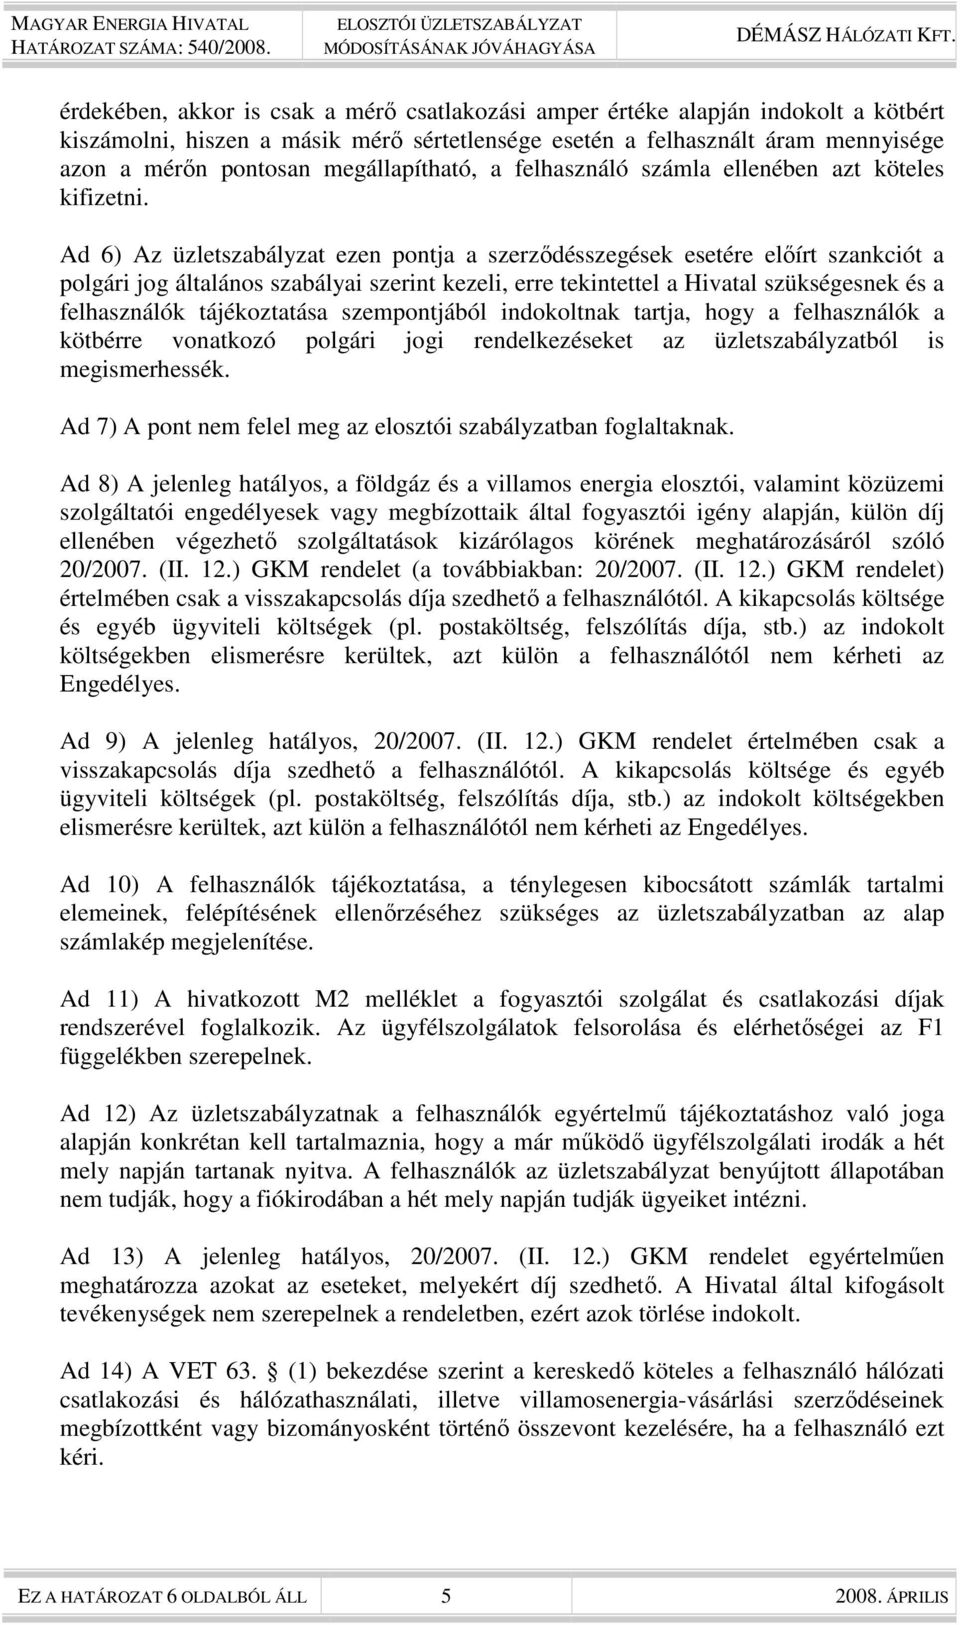 Ad 6) Az üzletszabályzat ezen pontja a szerzıdésszegések esetére elıírt szankciót a polgári jog általános szabályai szerint kezeli, erre tekintettel a Hivatal szükségesnek és a felhasználók